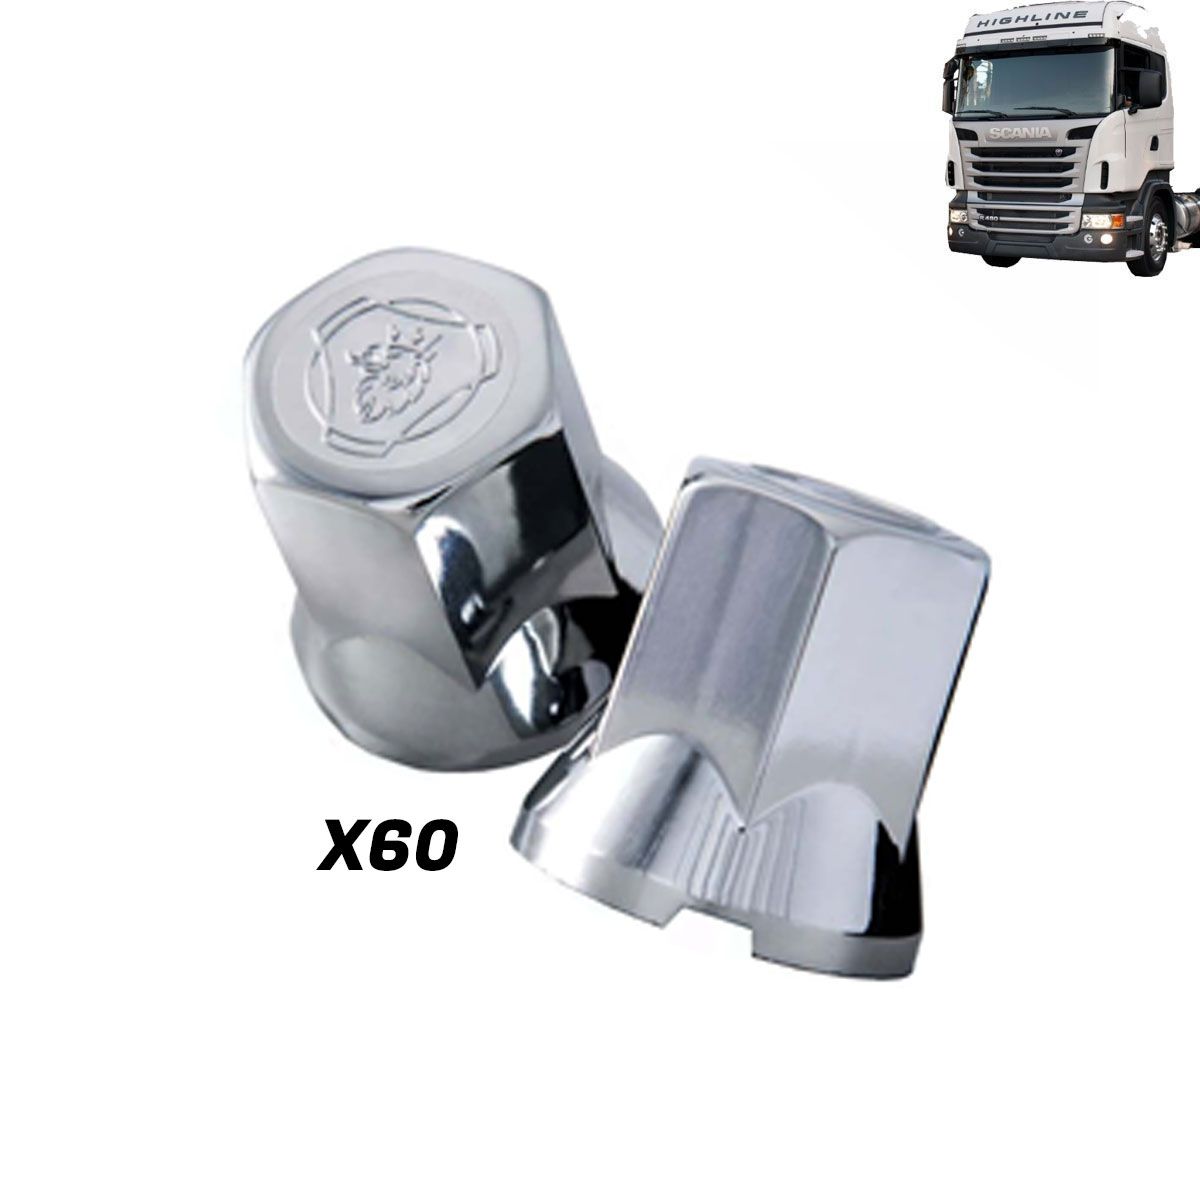 Kit sobre tampa dianteira tração e truck + 60 capas de porca compatível com o caminhão Scania S5 após 2011